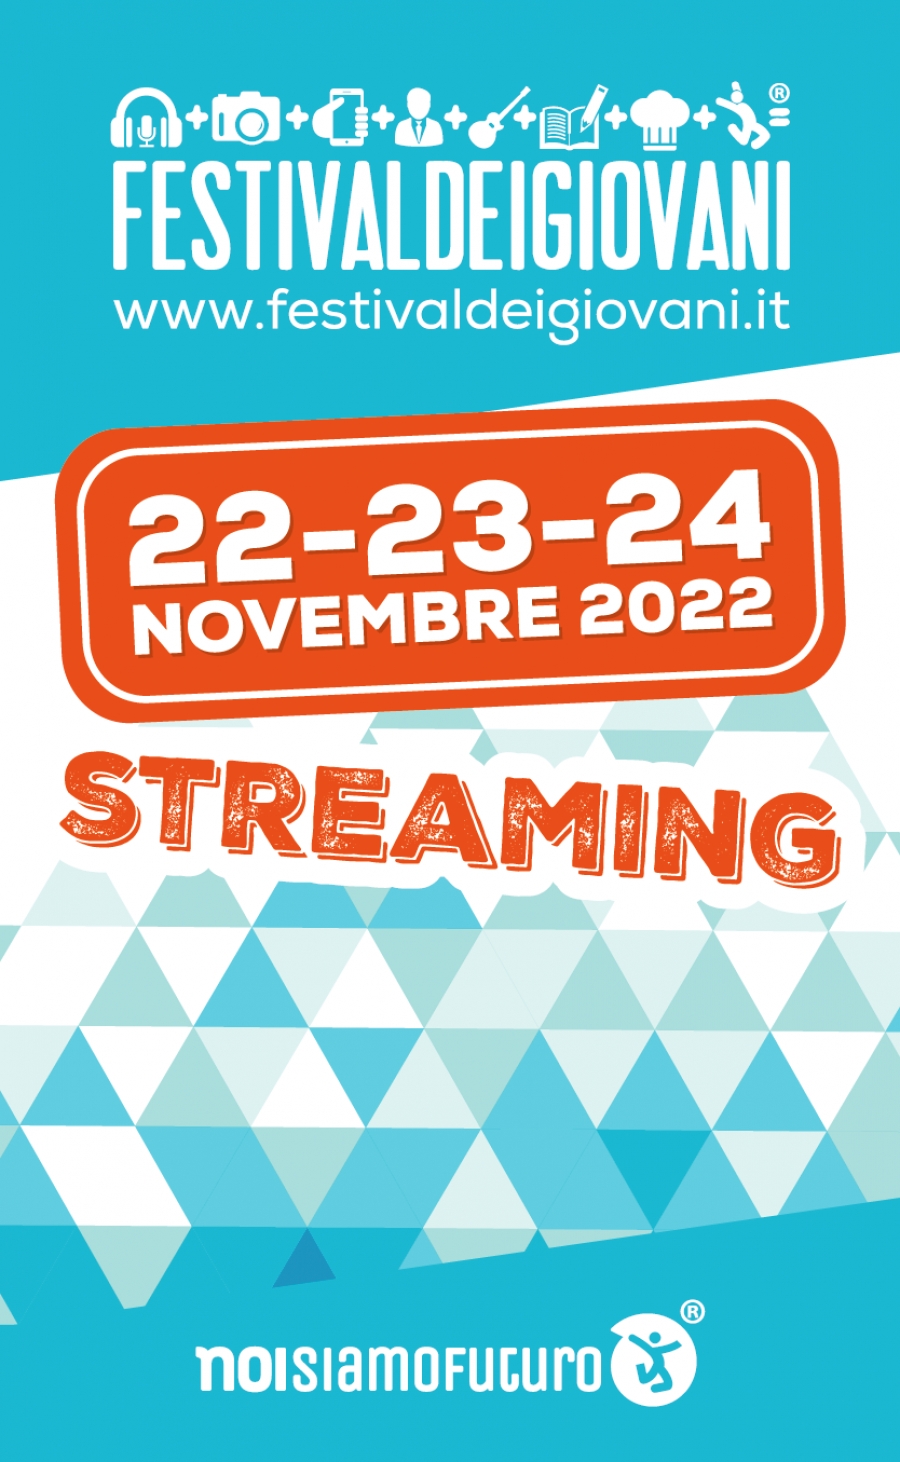 Festivaldeigiovani® in Streaming (22-23-24 novembre 2022)